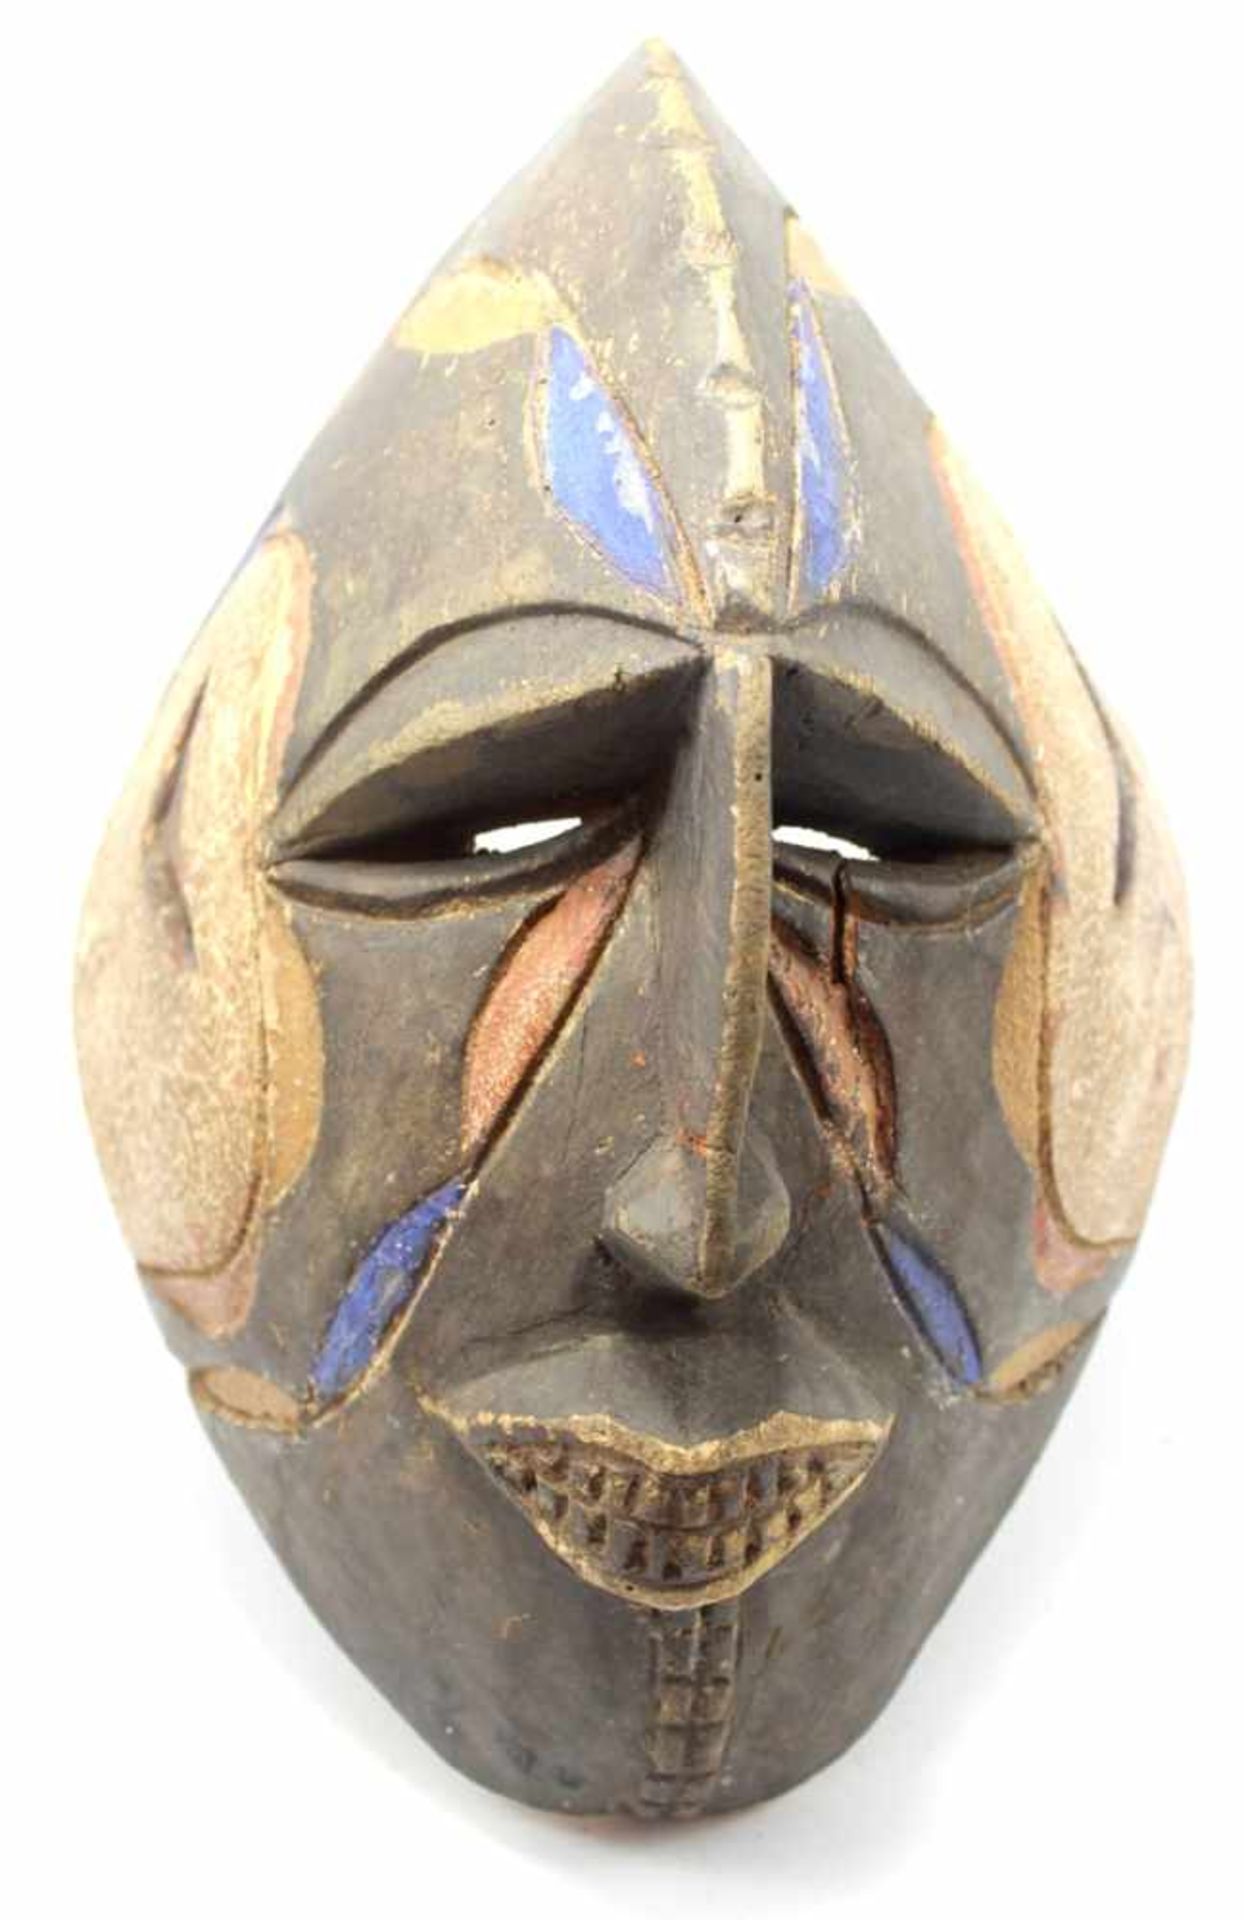 Maske - Afrika braunes Holz, bunt bemalt, Stirn spitz herausragend, schmale Nase, Schlitzaugen, Mund